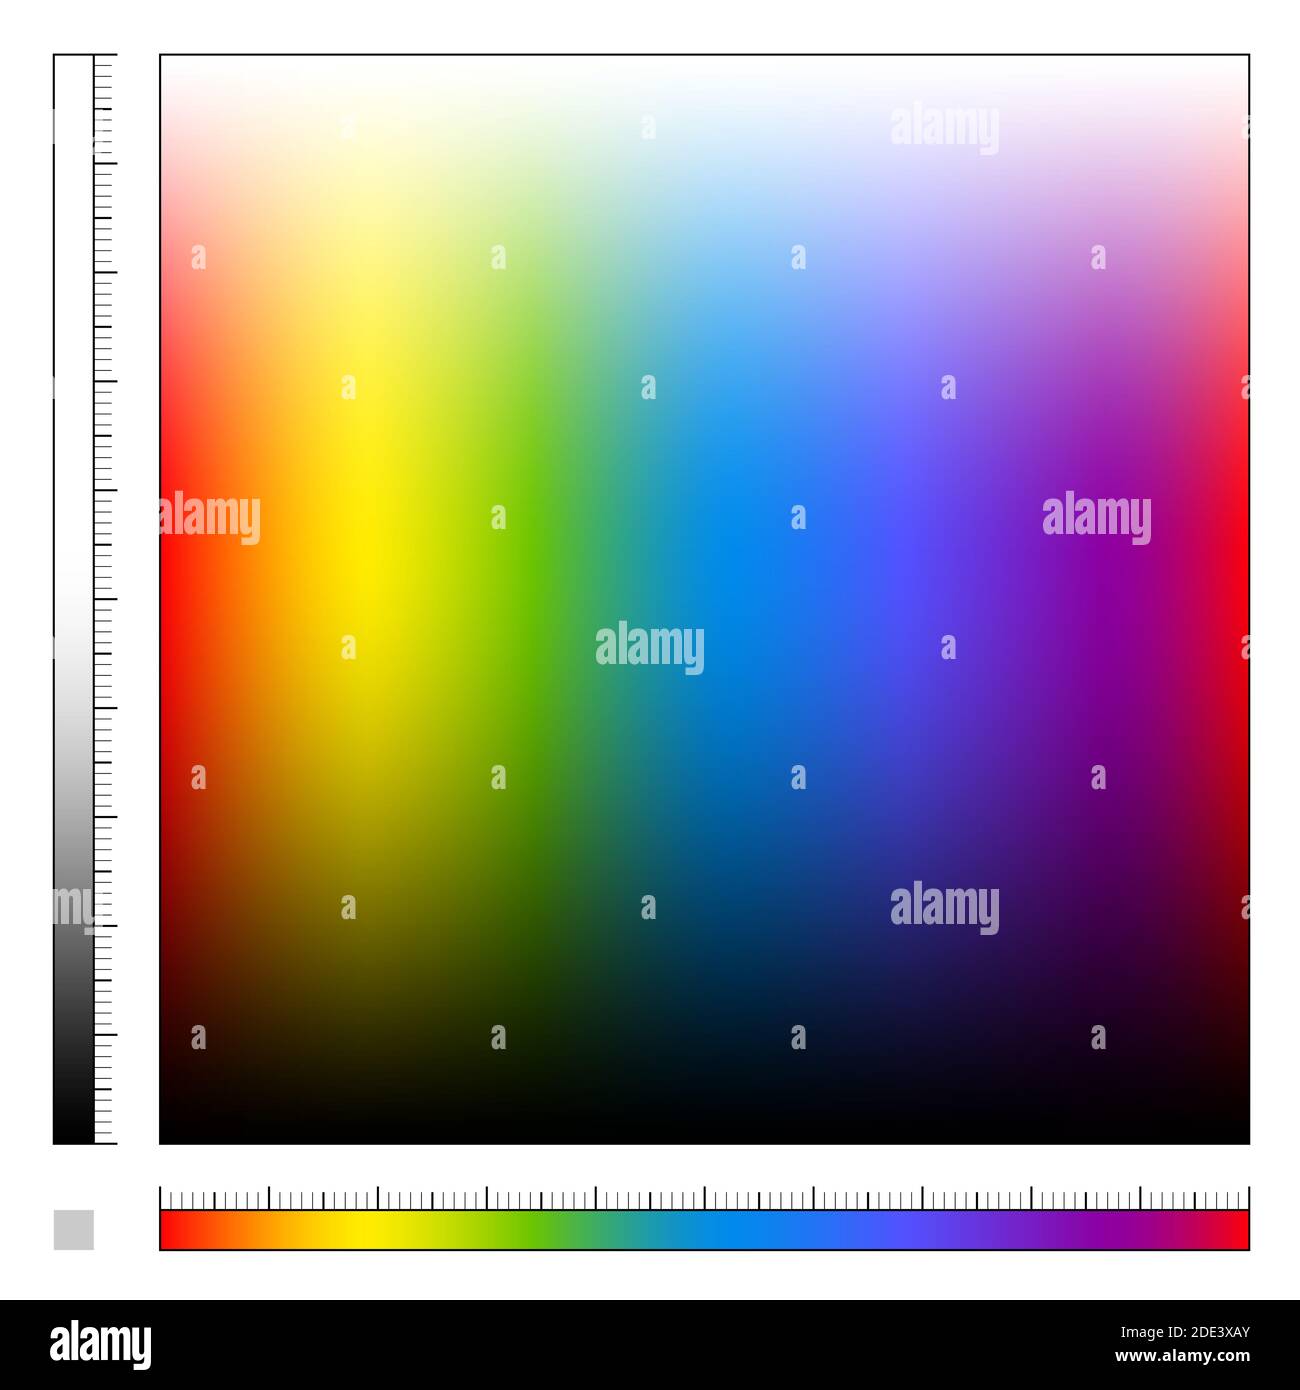 Campo di colore con diversa saturazione e gradiente di colore arcobaleno, spettro di luce visibile, tutti i colori dell'arcobaleno dalla luce al buio. Foto Stock